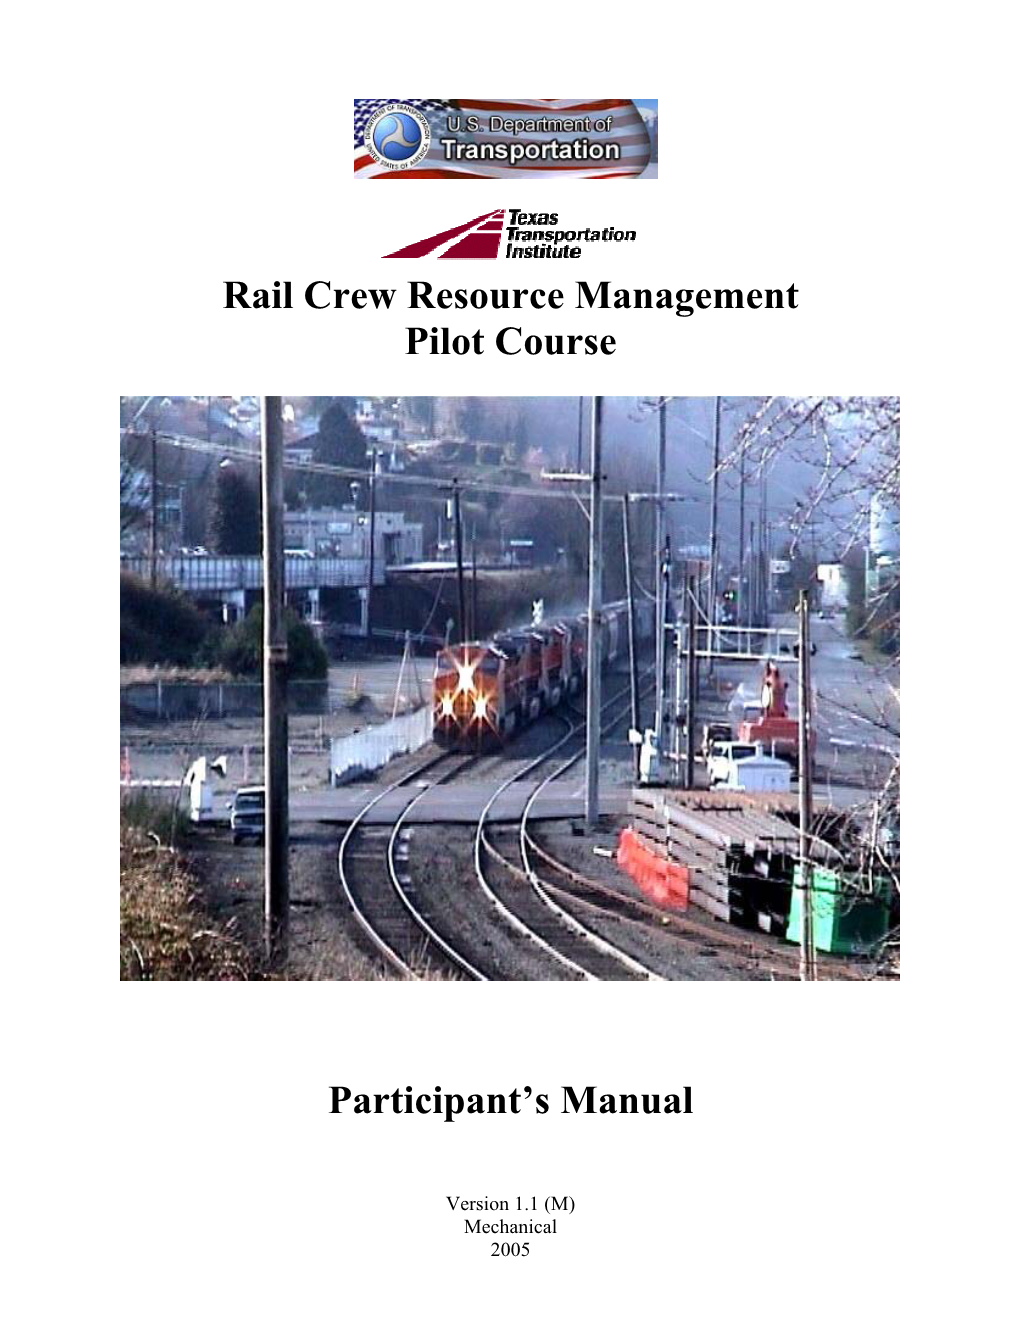 Rail Crew Resource Management Pilot Course Participant's Manual